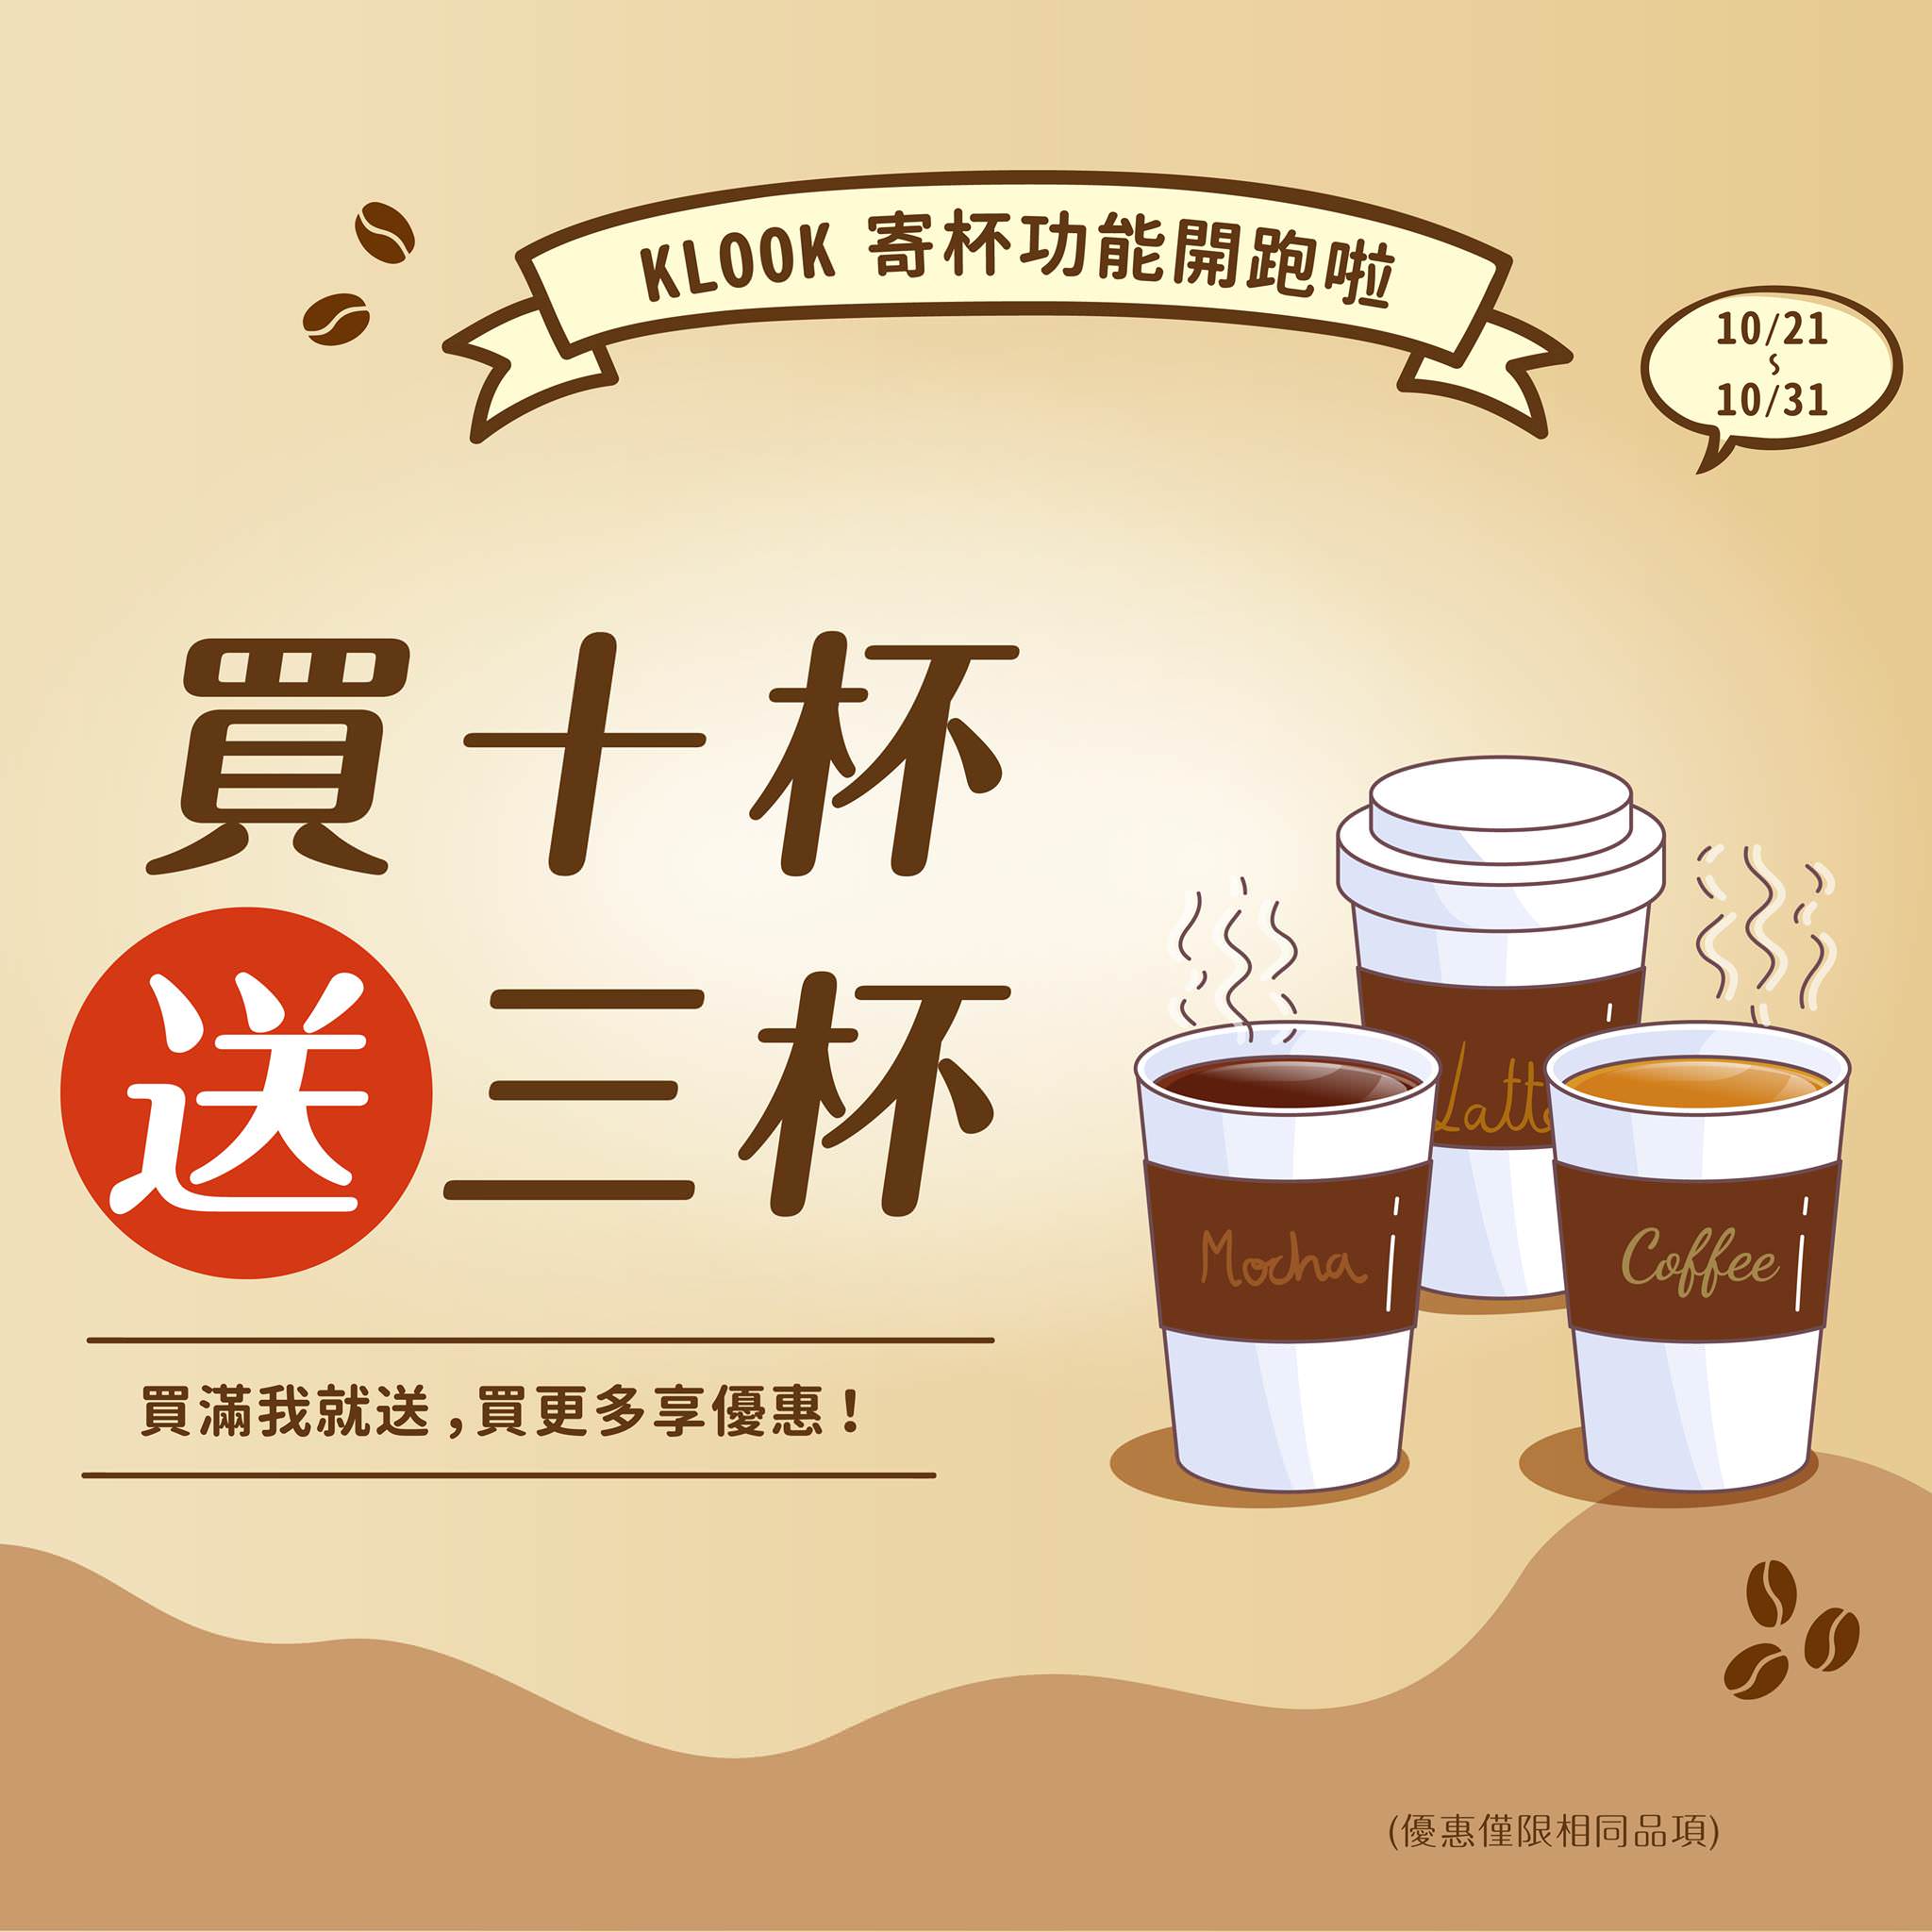 【KLOOK寄杯活動】咖啡、果汁、珍珠奶茶等飲品買10送3！ - threeonelee.com